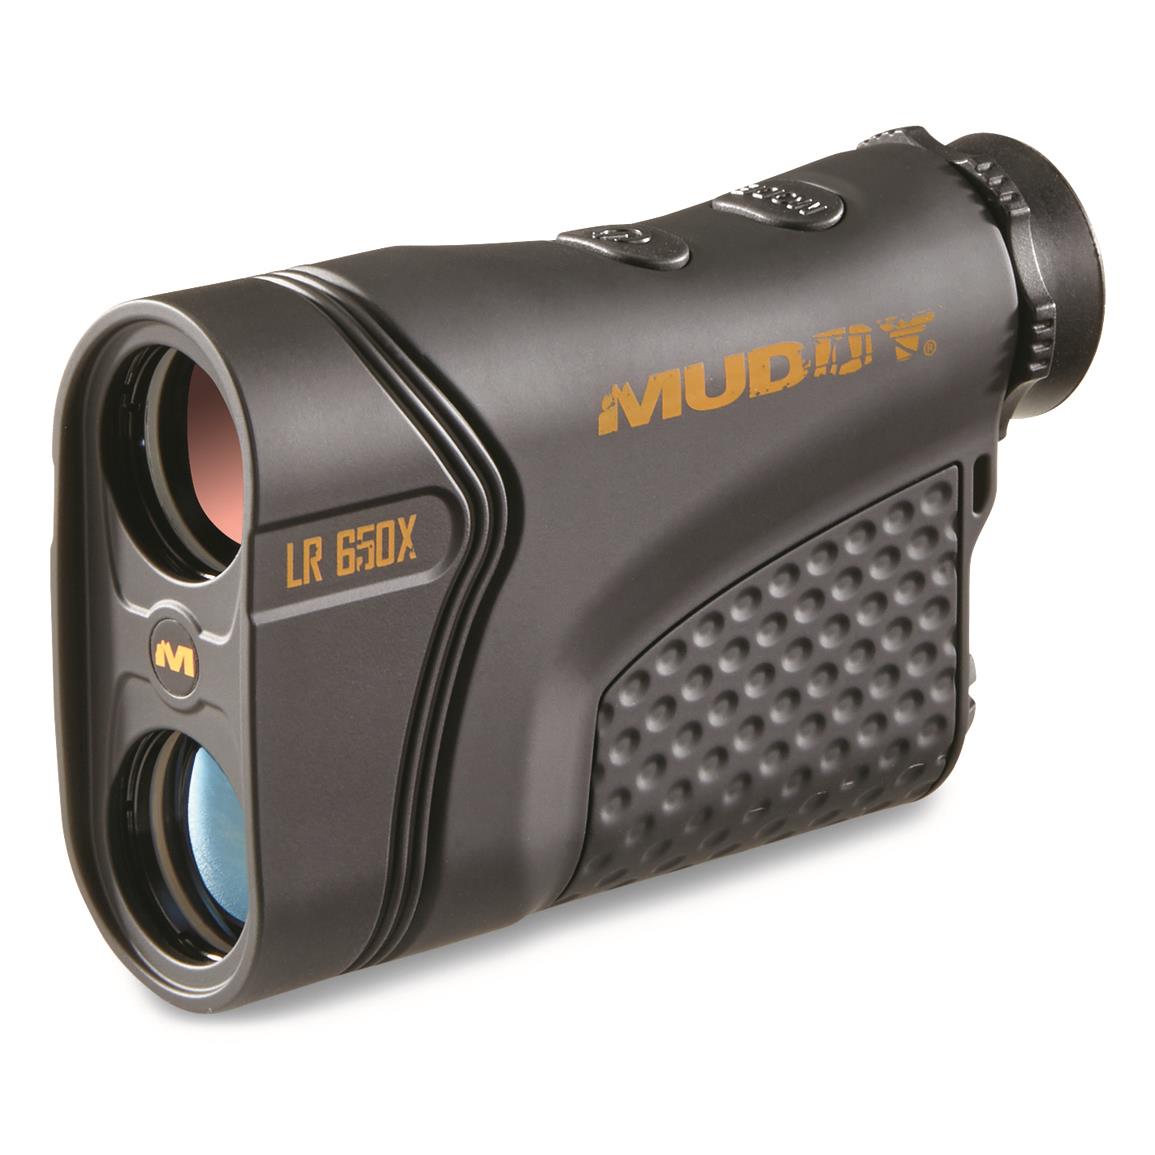 Muddy LR650X Laser Range Finder 650 Yard